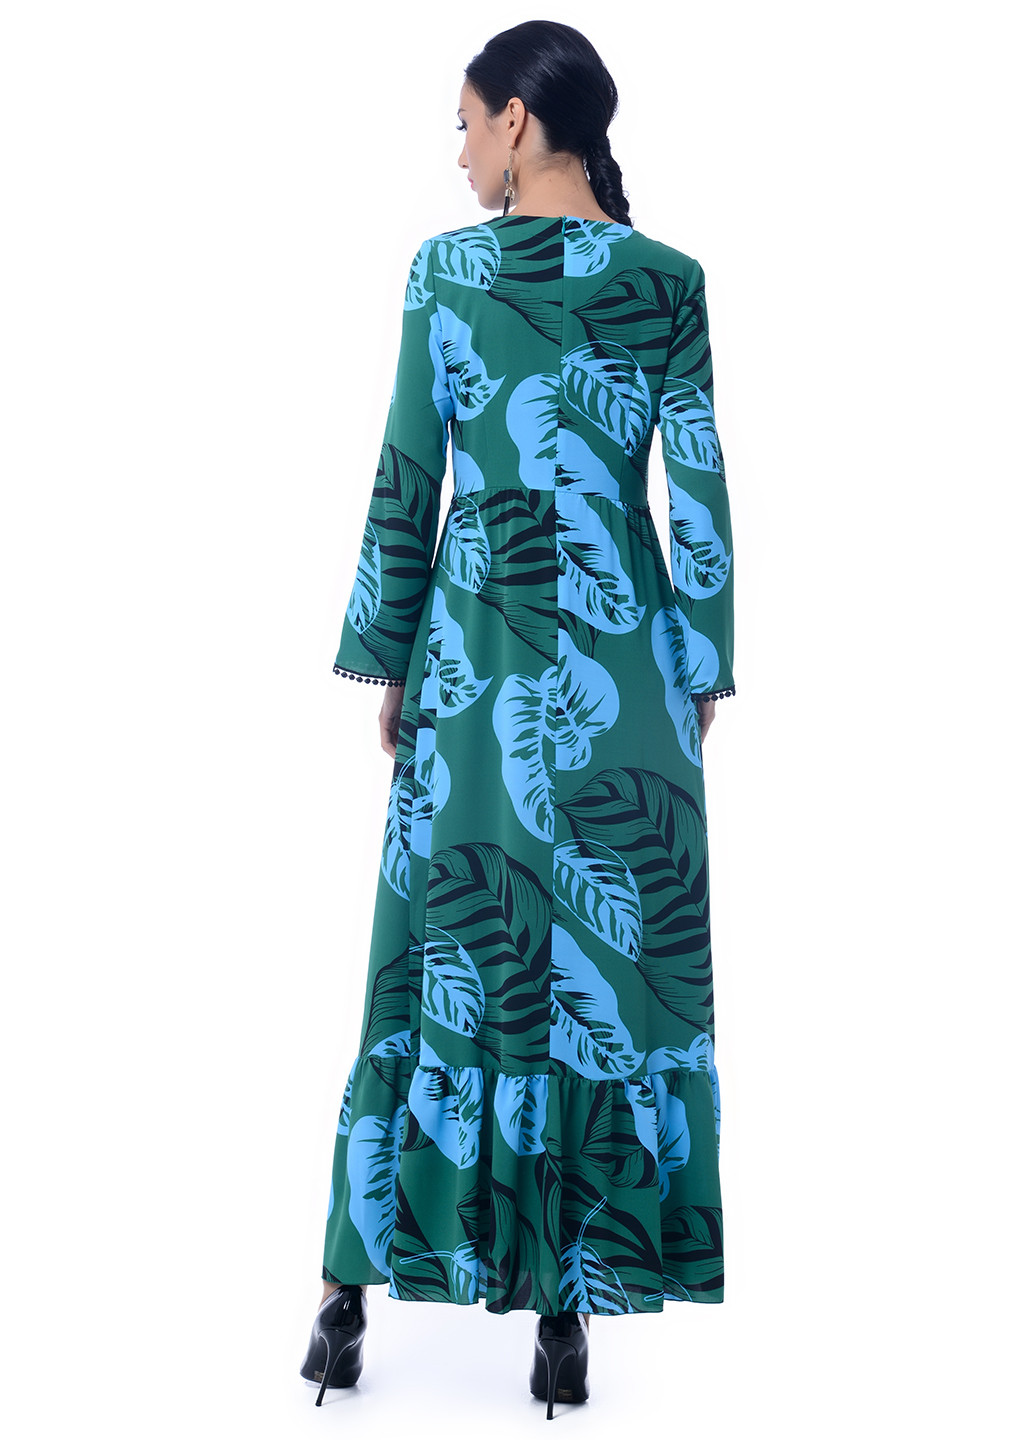 Зеленое коктейльное платье в стиле ампир Iren Klairie с цветочным принтом